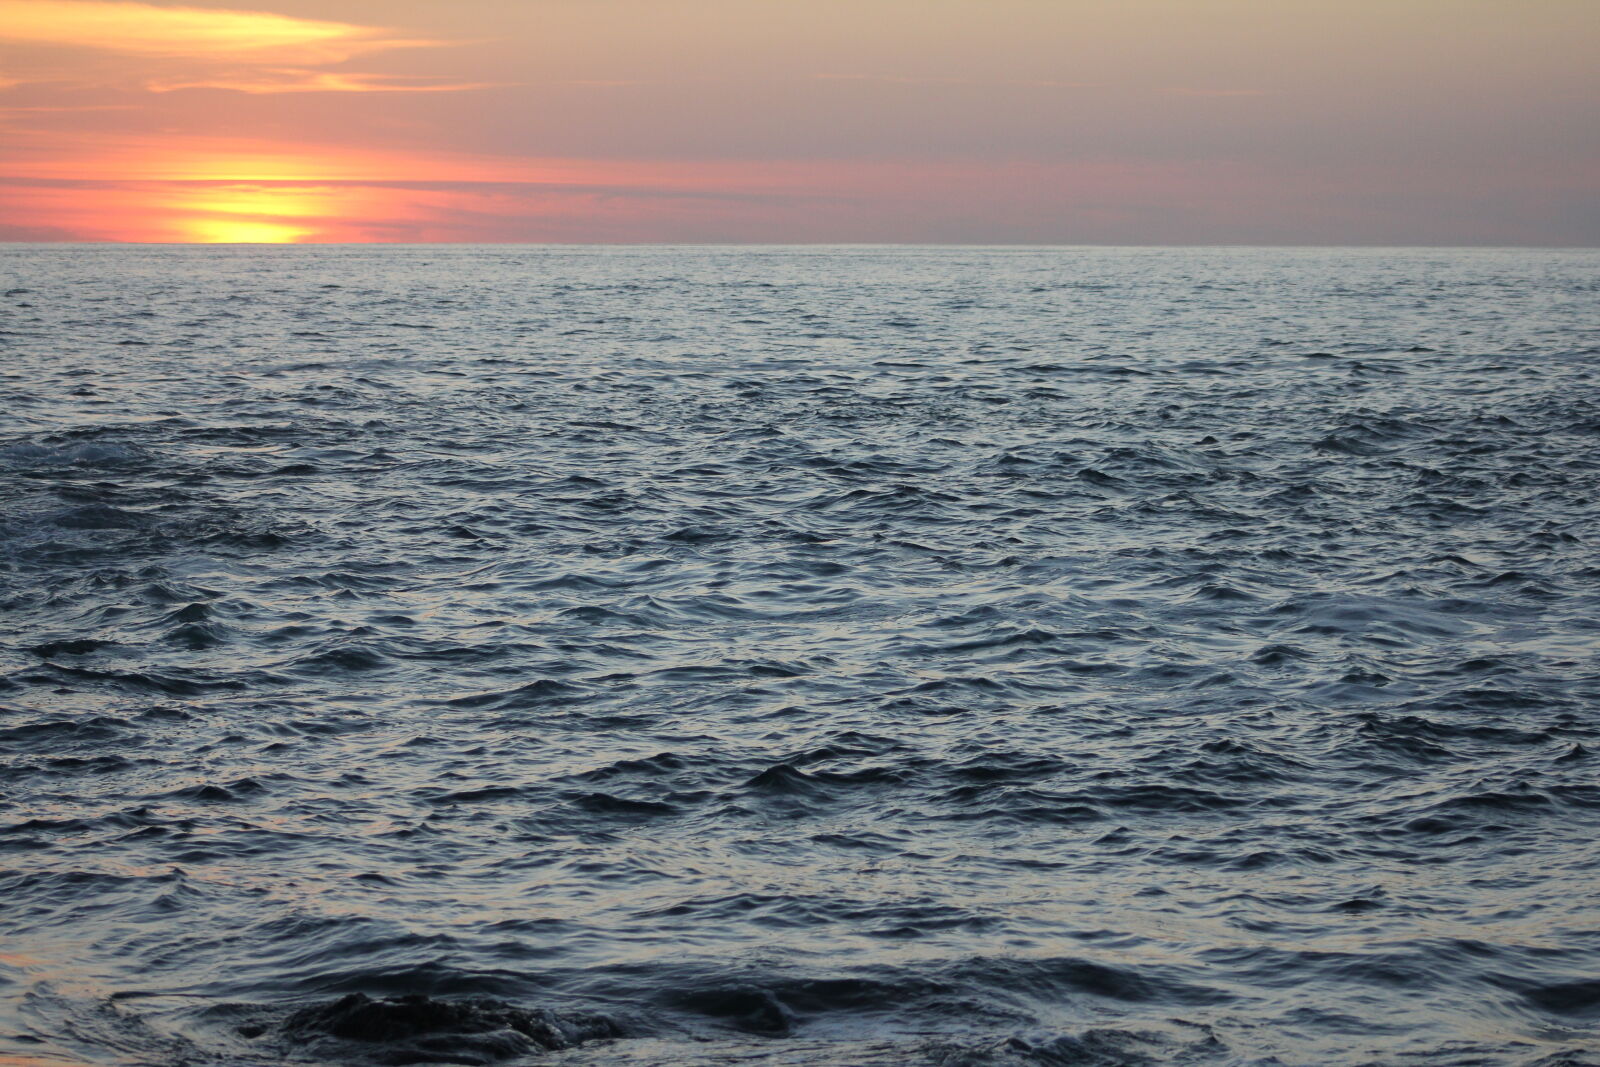 Canon EOS 60D + Canon EF 75-300mm f/4-5.6 sample photo. Dawn, ocean, shore photography